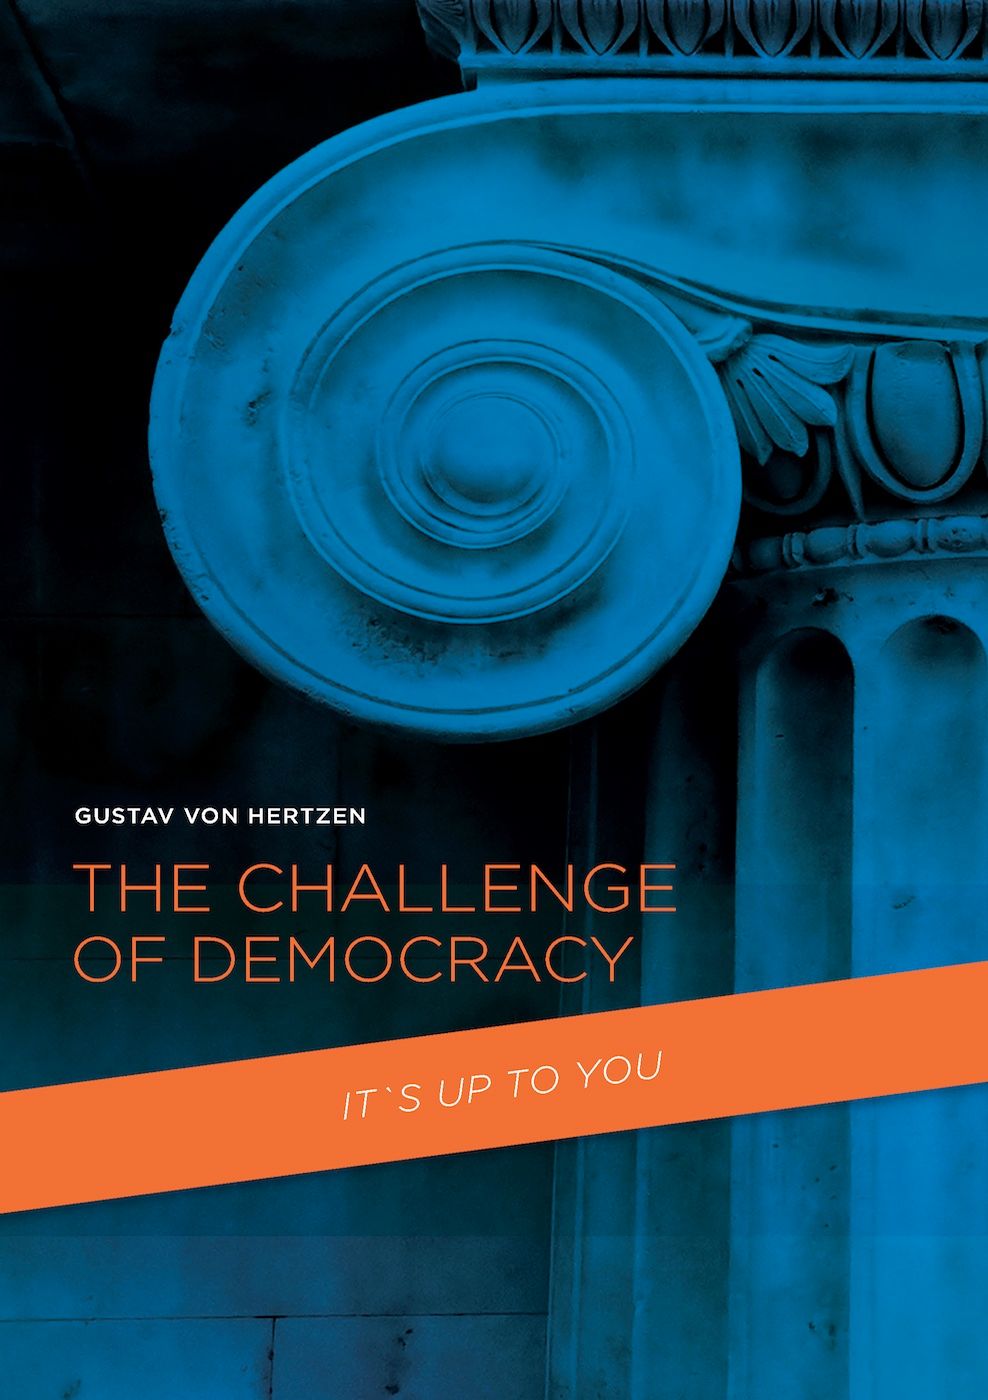 The Challenge of Democracy, eBook by Gustav von Hertzen